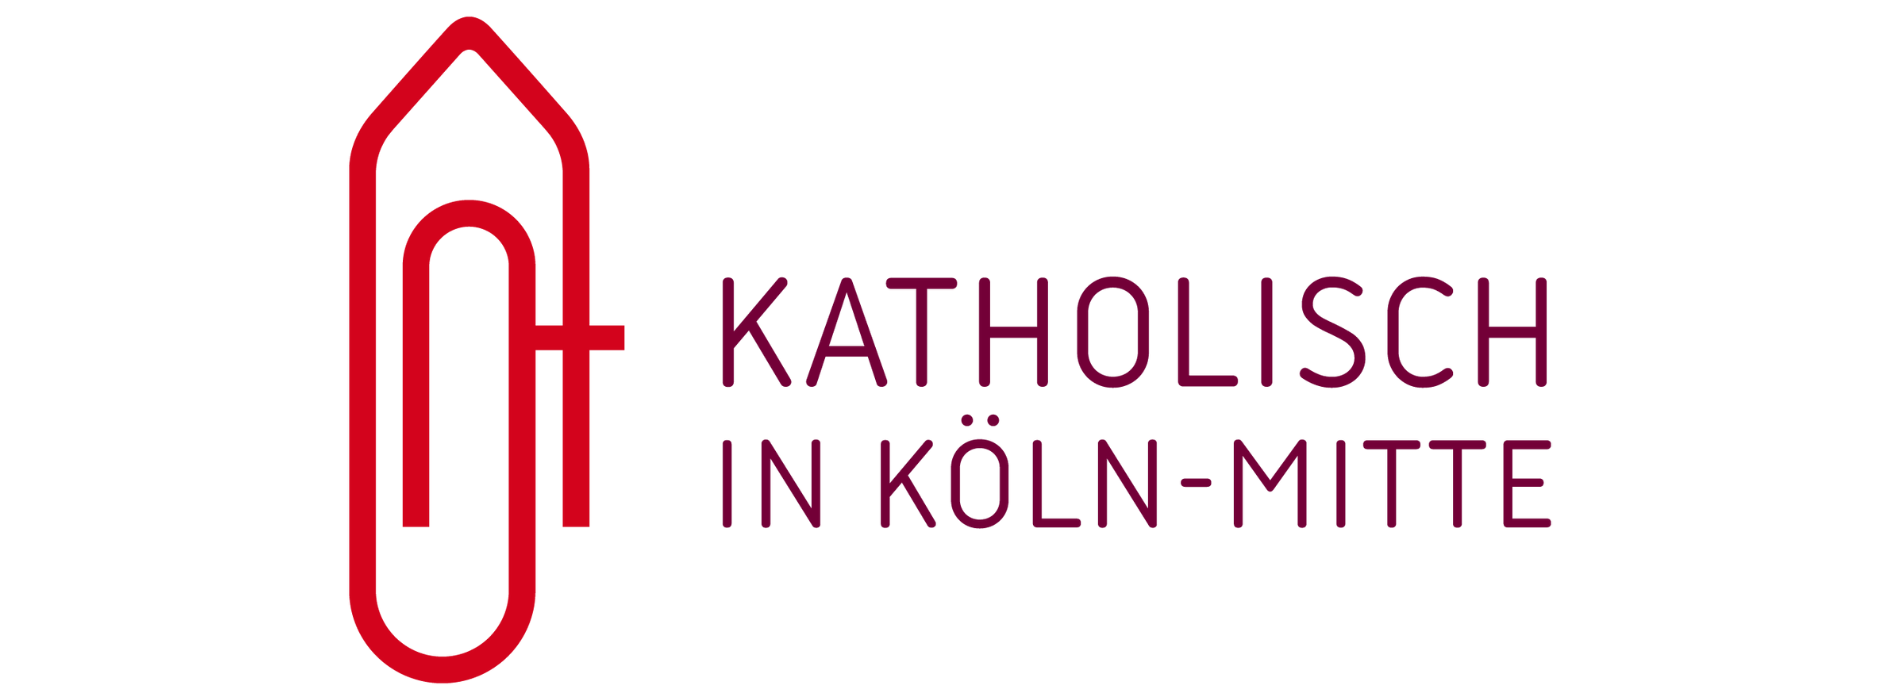 Pfarrbüros in Köln-Mitte: Alle Kontaktdaten und Öffnungszeiten